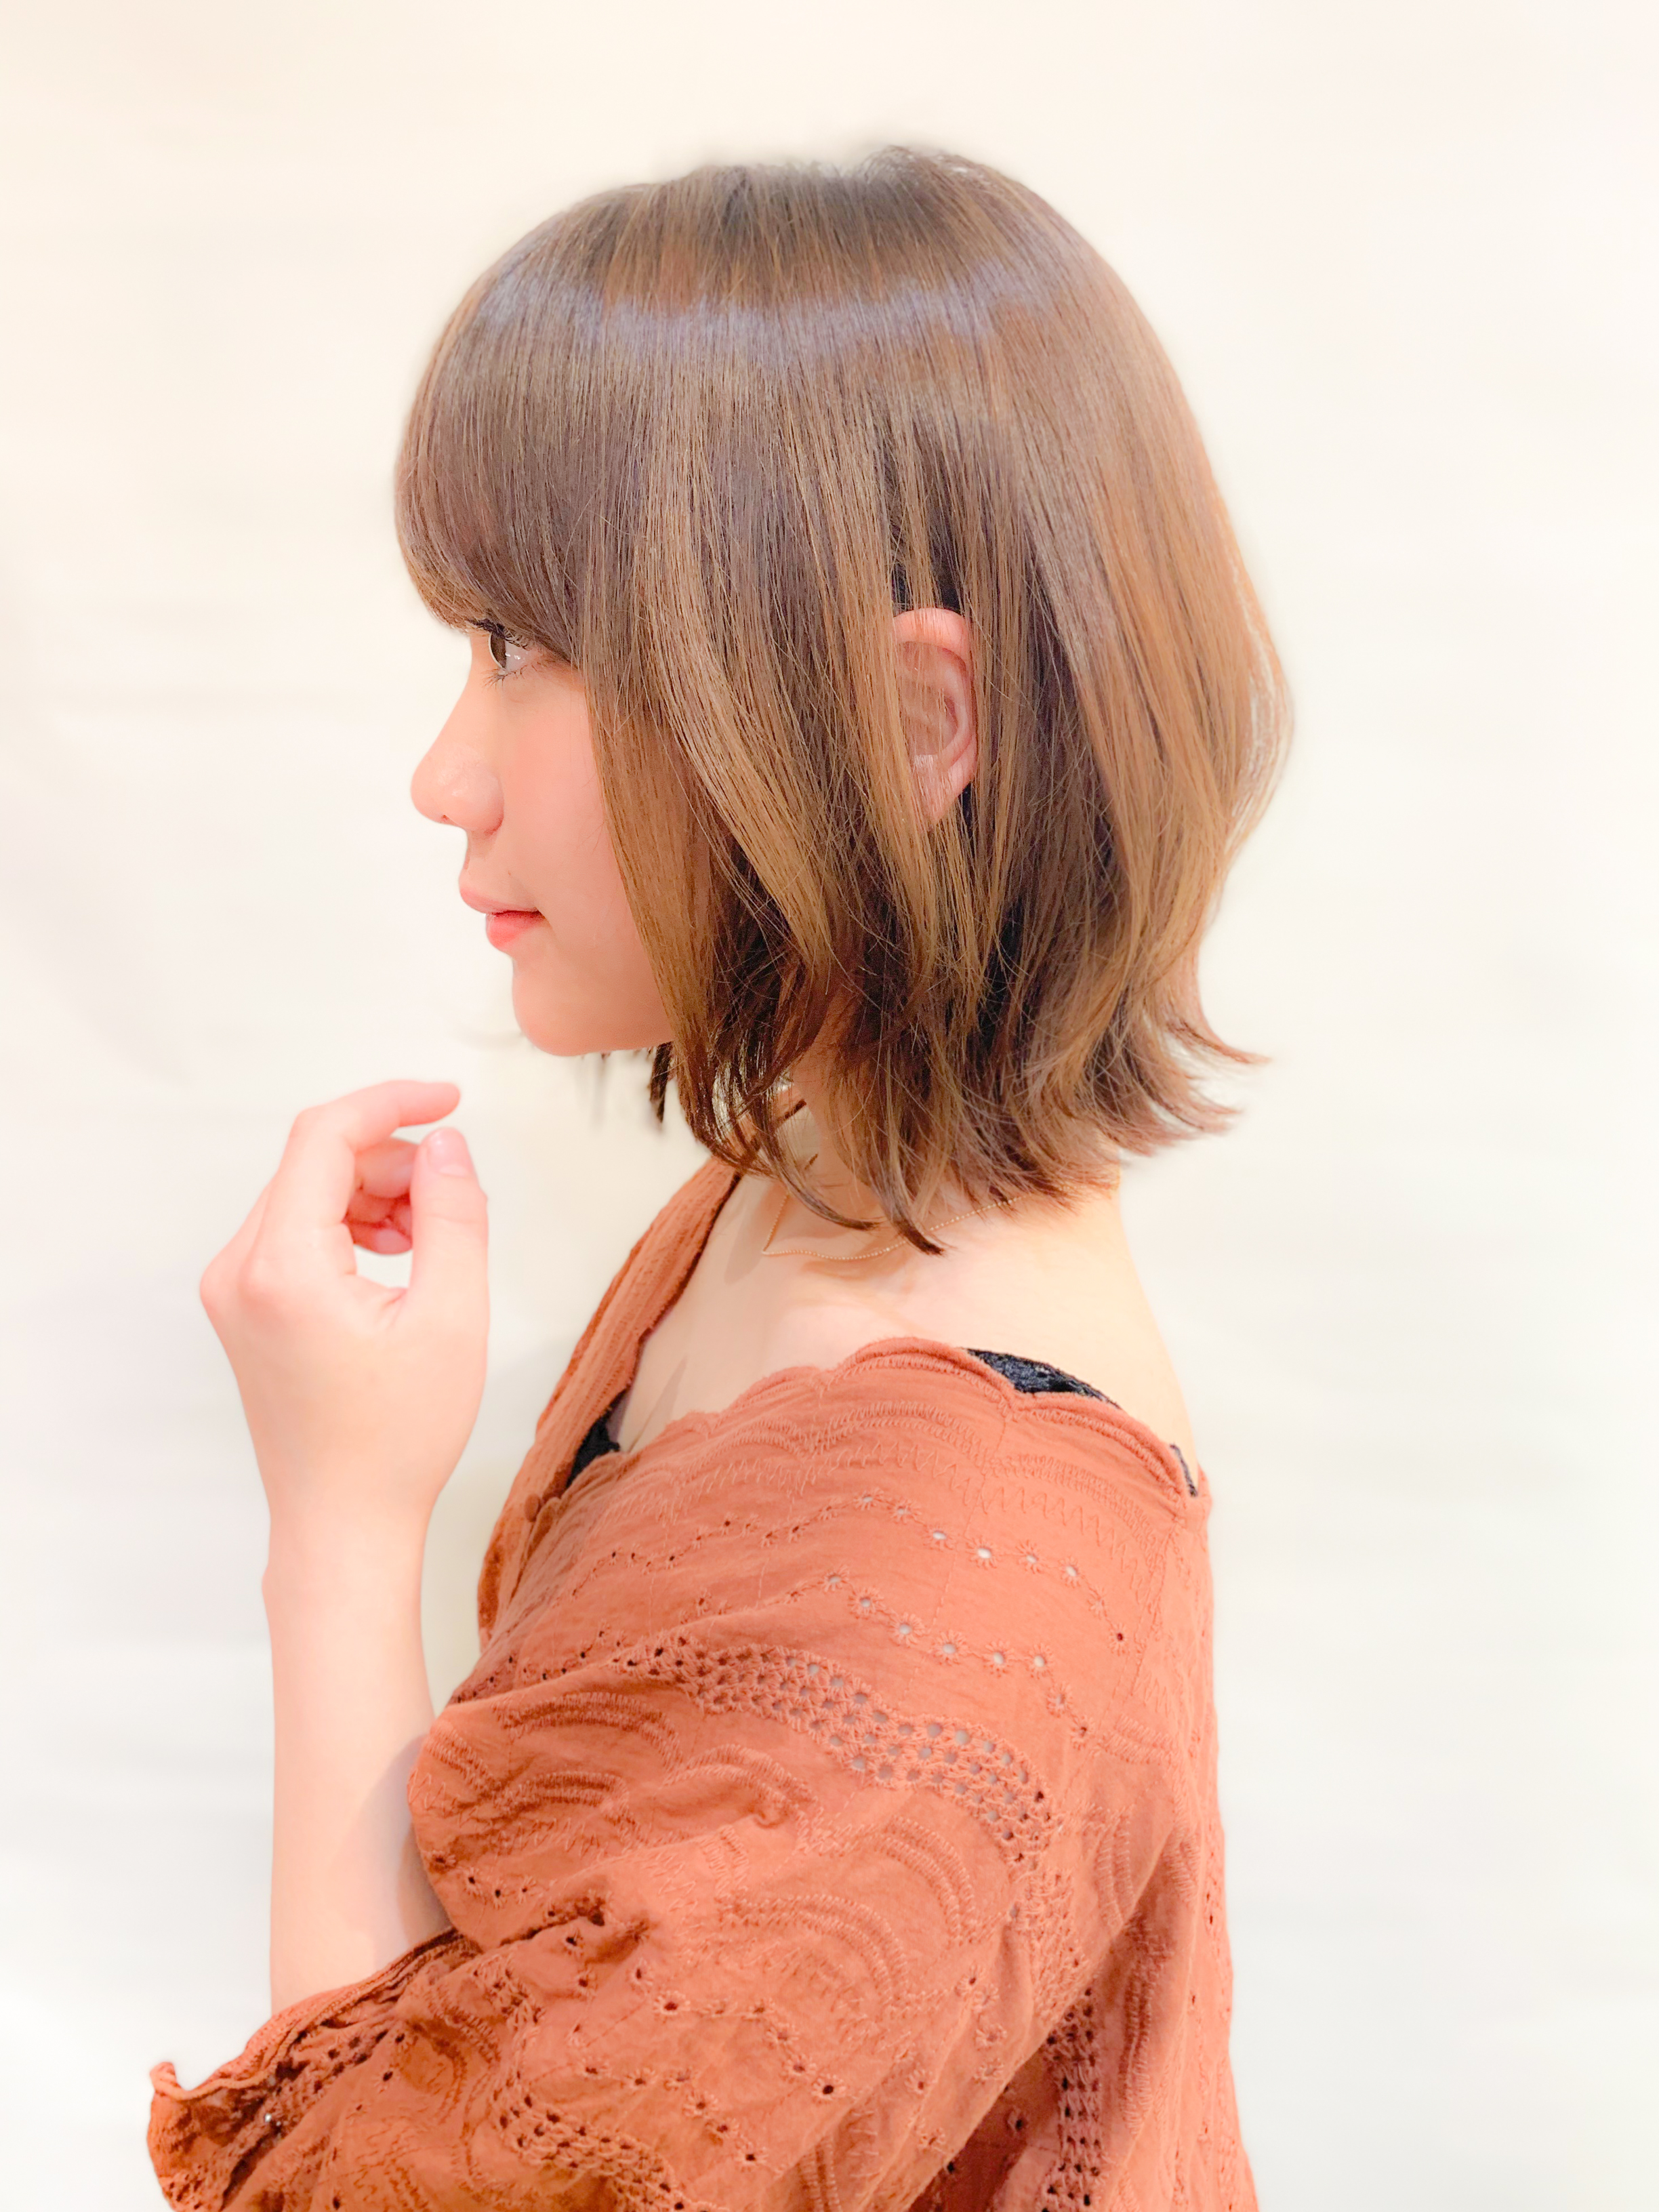 21年夏 レイヤーボブで 気分も軽やかになるヘアスタイルに 似合わせカットが上手い東京の美容師 美容室minx銀座 蛭田のブログ